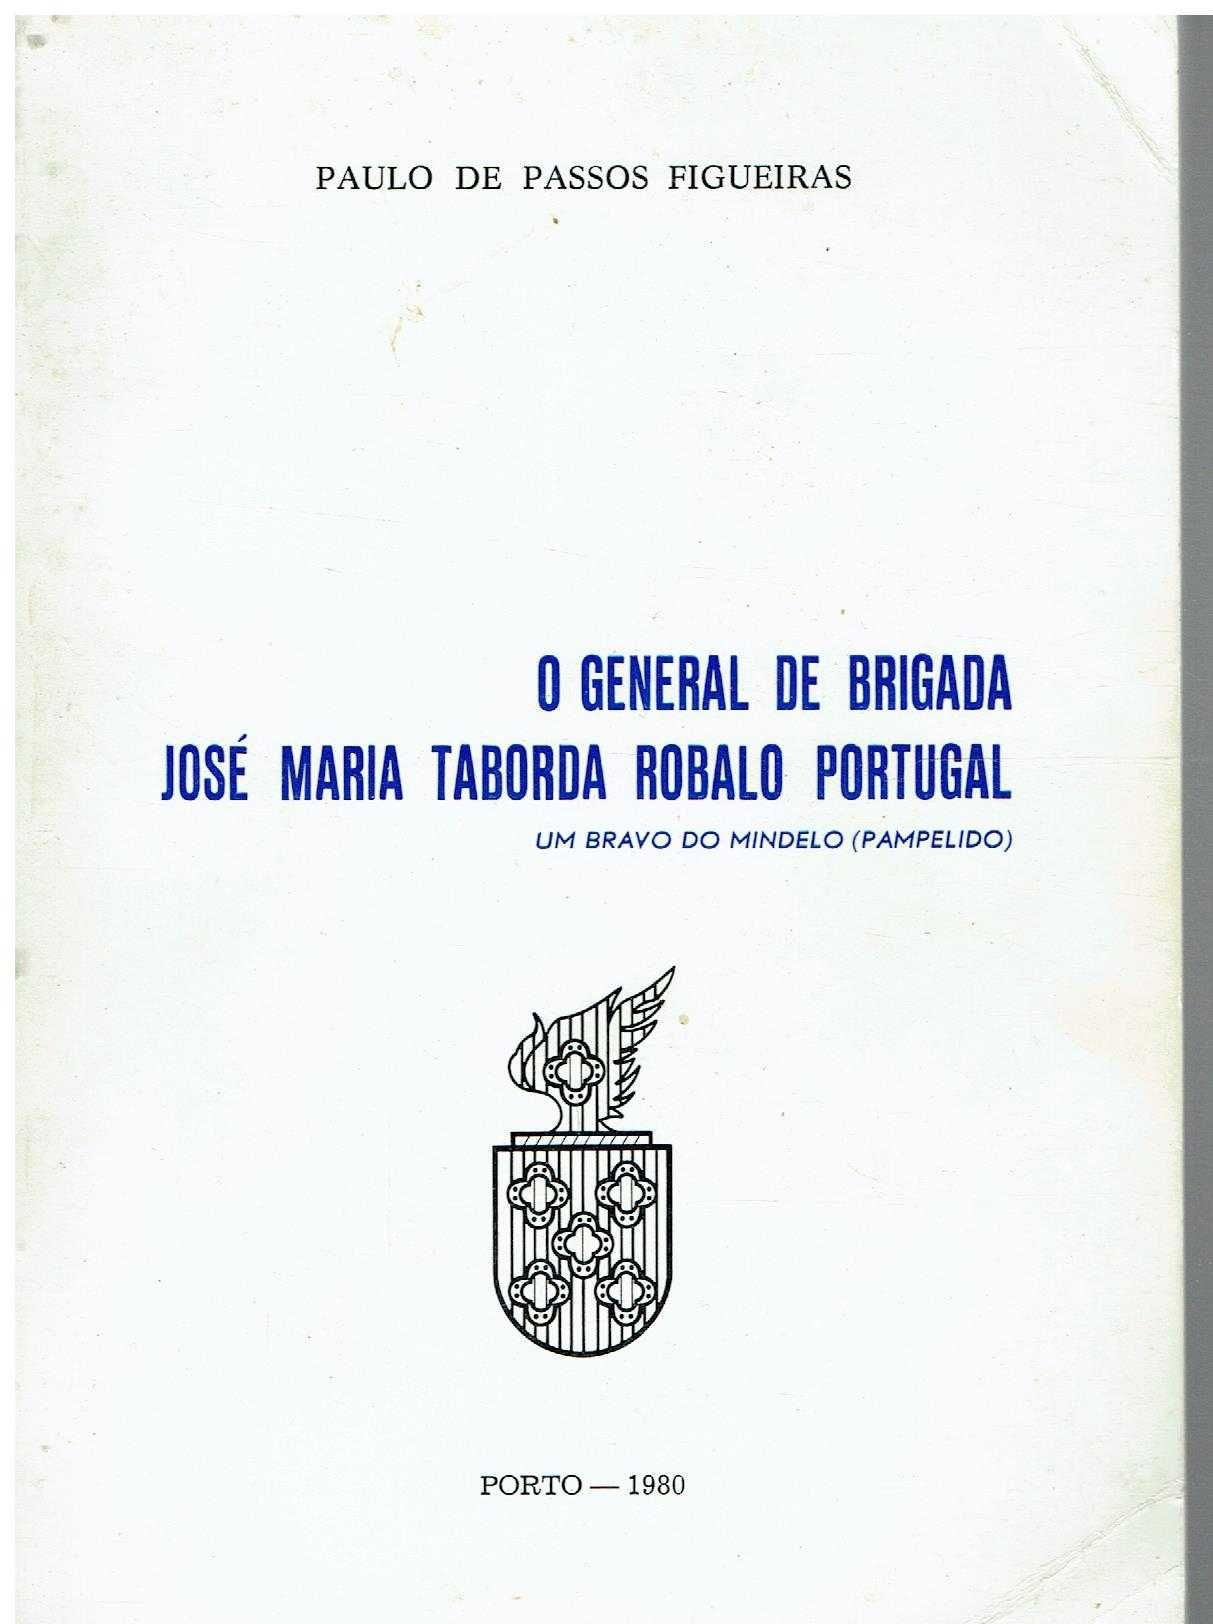 11655

O general de brigada José Maria Taborda (Robalo Portugal)